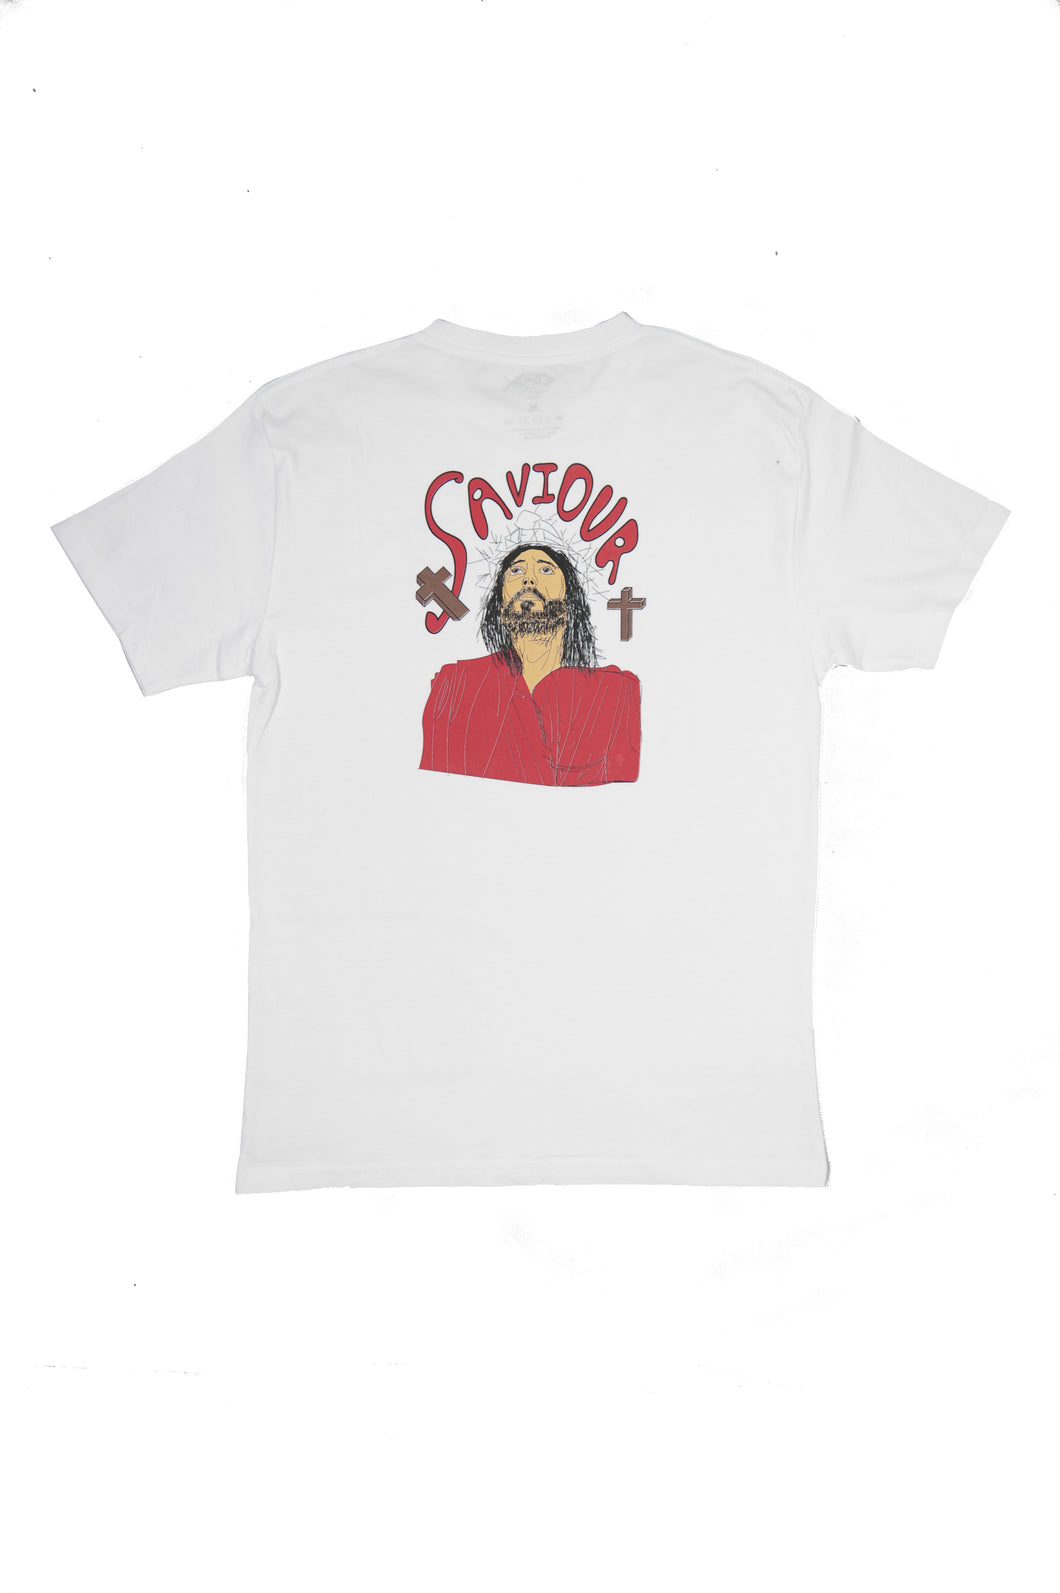 'Saviour' T-shirt